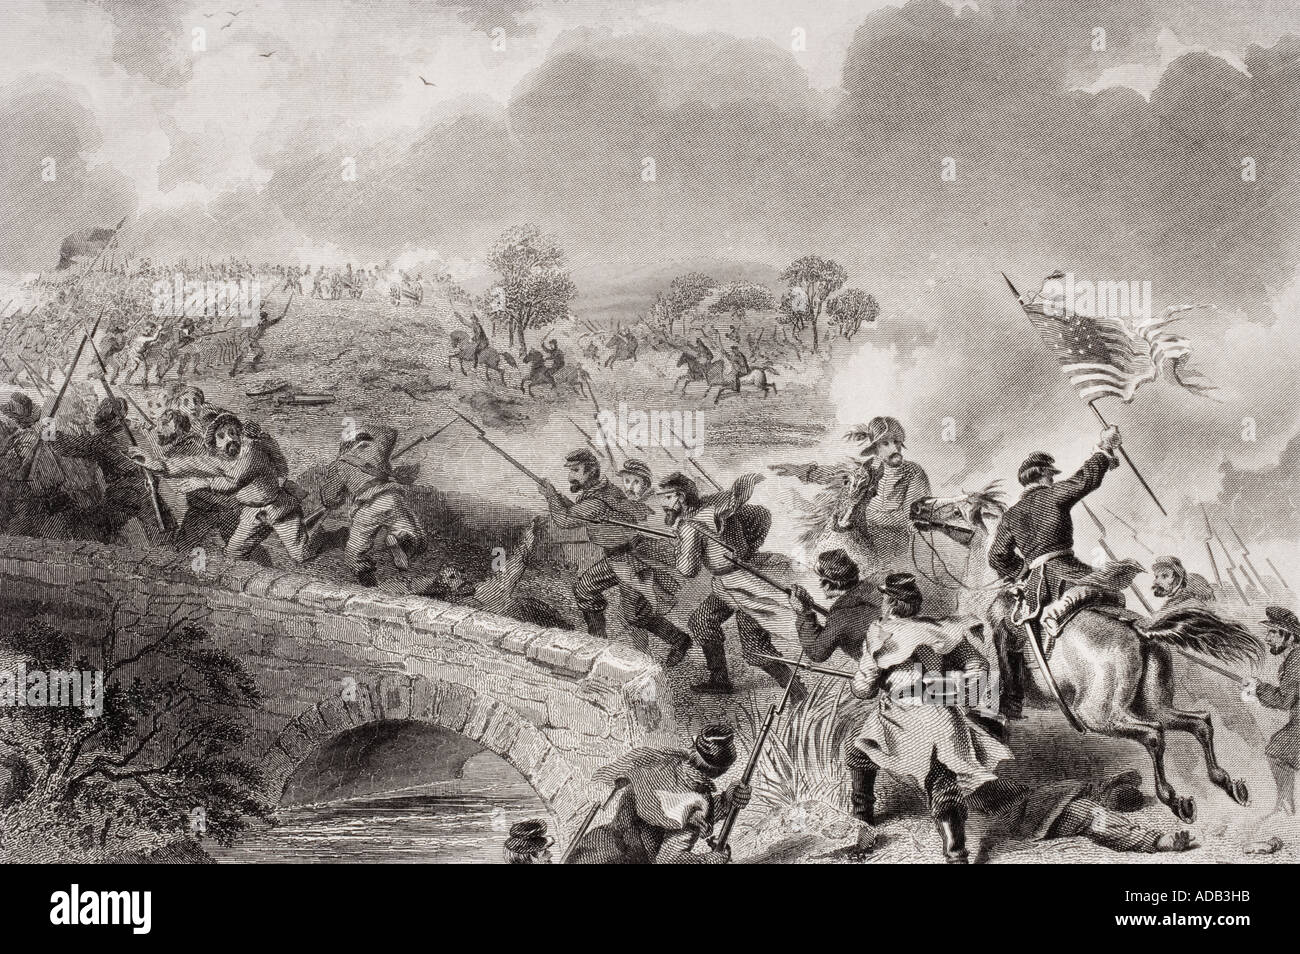 Schlacht von Antietam in der Nähe von Sharpsburg, Maryland, im Jahr 1862. Nehmen der Brücke am Antietam Creek. Künstler F O C Darley Stockfoto